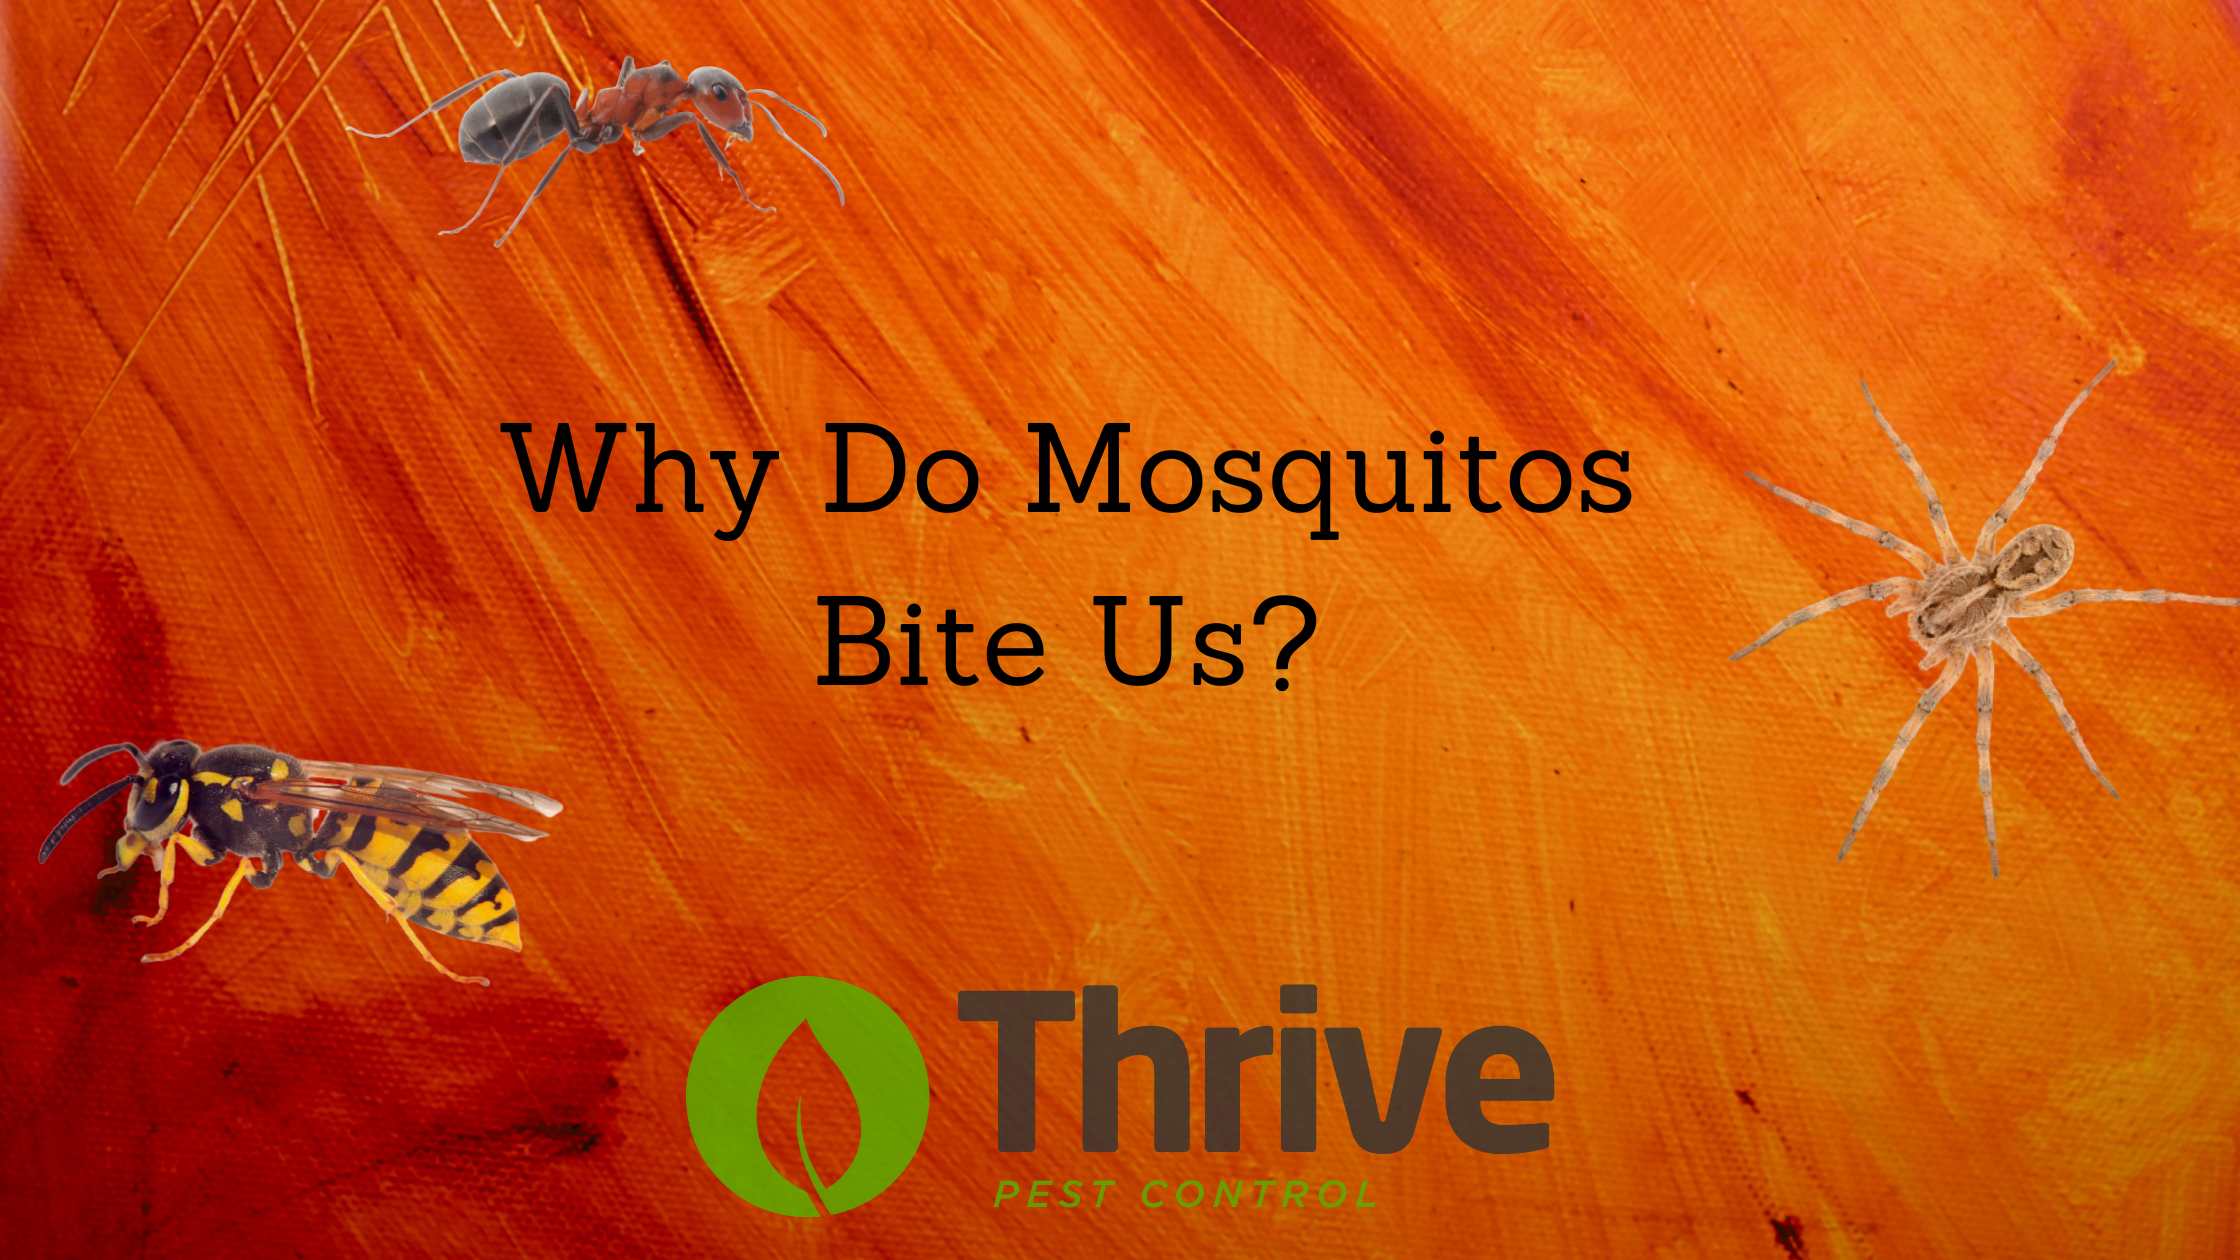 Why Do Mosquitos Bite Us